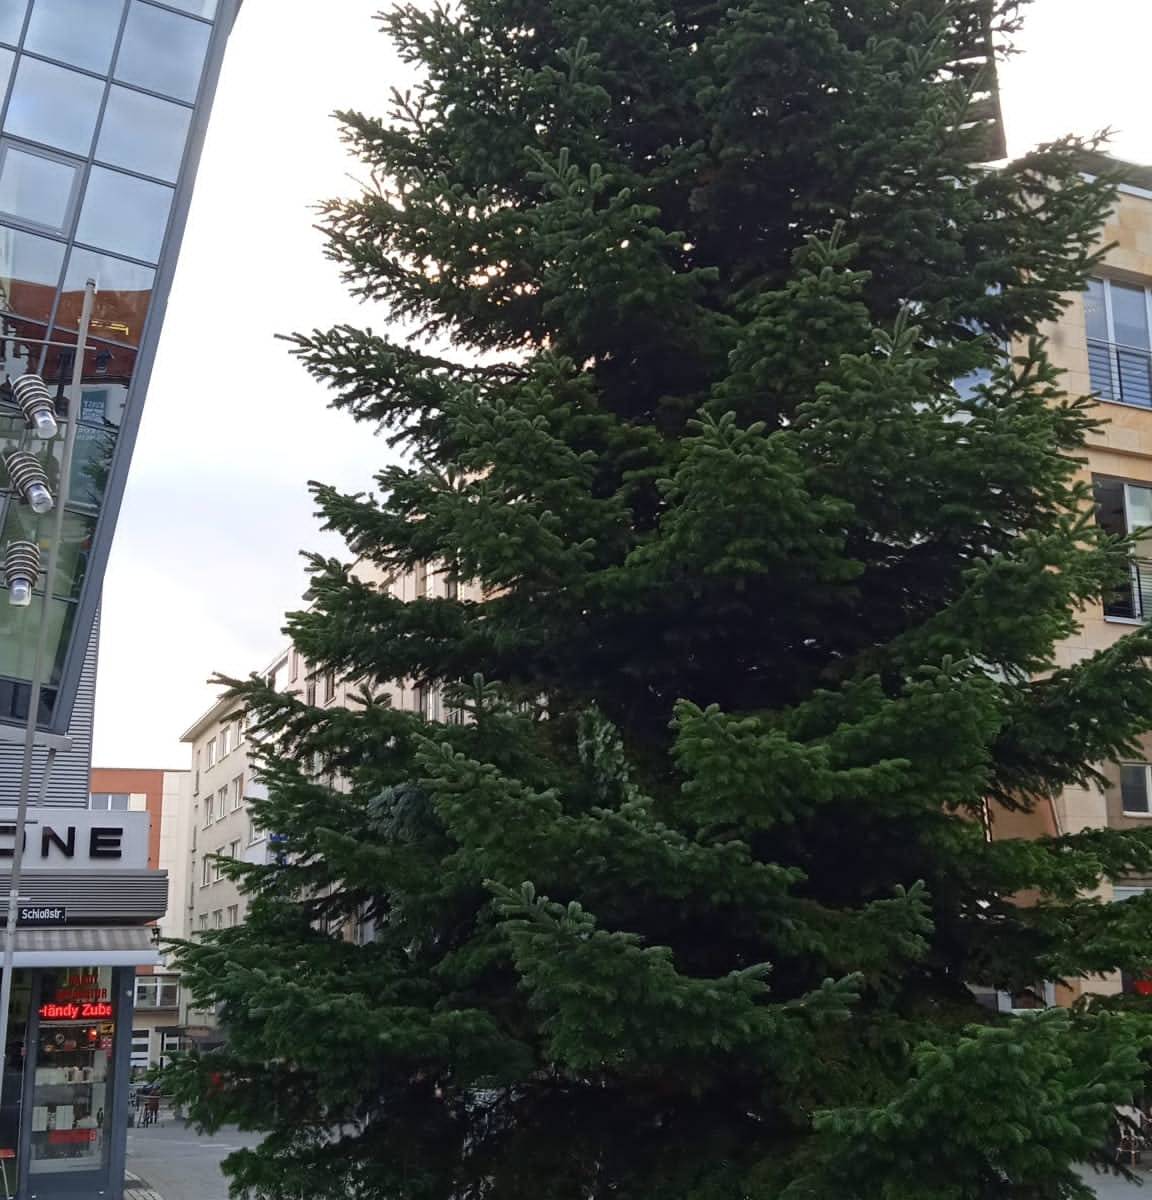 Mülheim stellt Weihnachtsbaum auf  – Anwohner frustriert: „Solltet euch schämen“